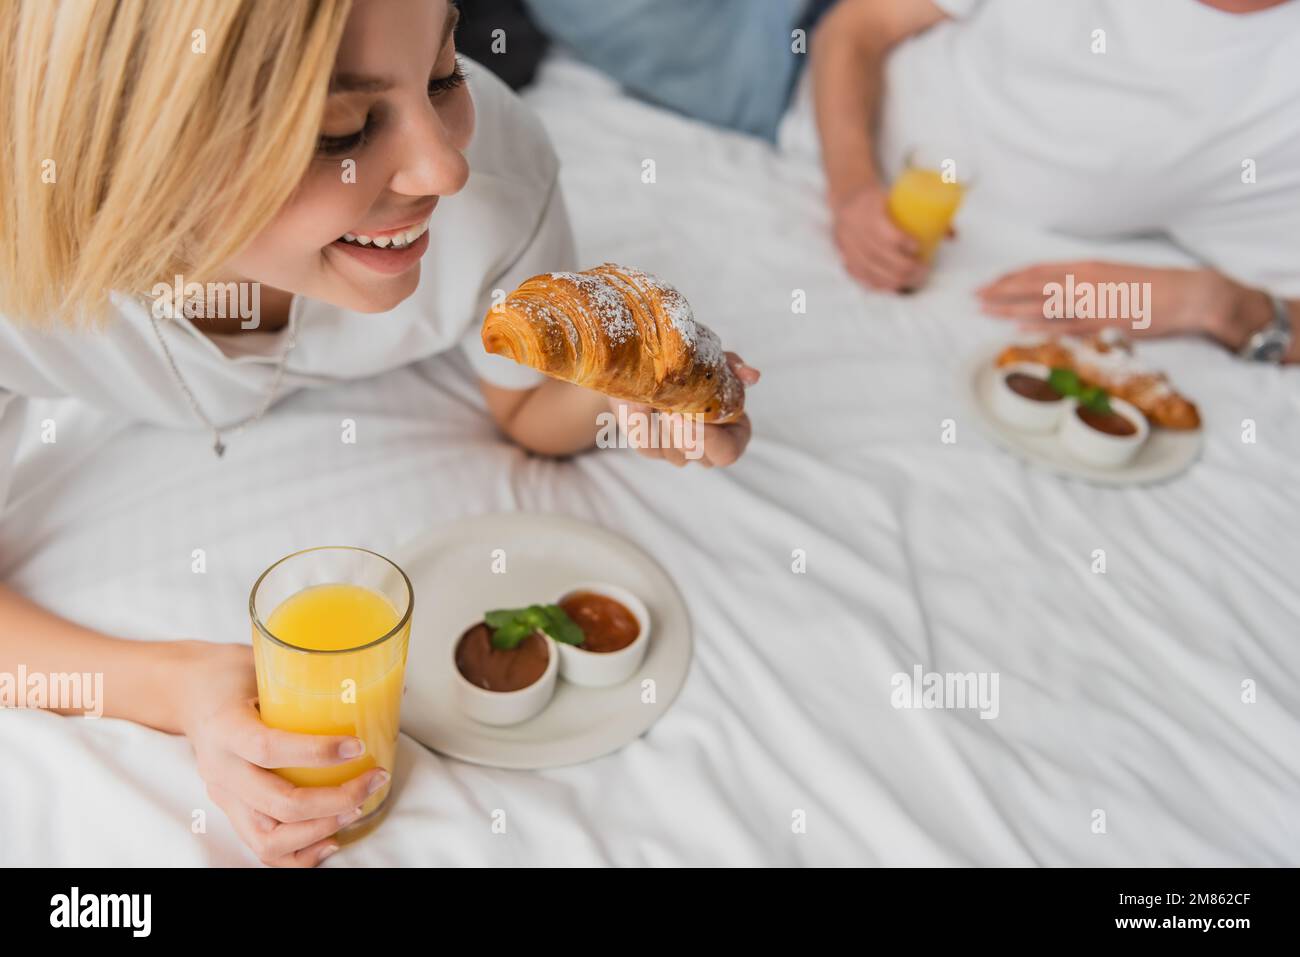 Eine glückliche blonde Frau, die leckere Croissants und Orangensaft in der Hand hielt, während sie im Hotelbett frühstückte, in der Nähe eines verschwommenen Freundes, Bild der Aktien Stockfoto